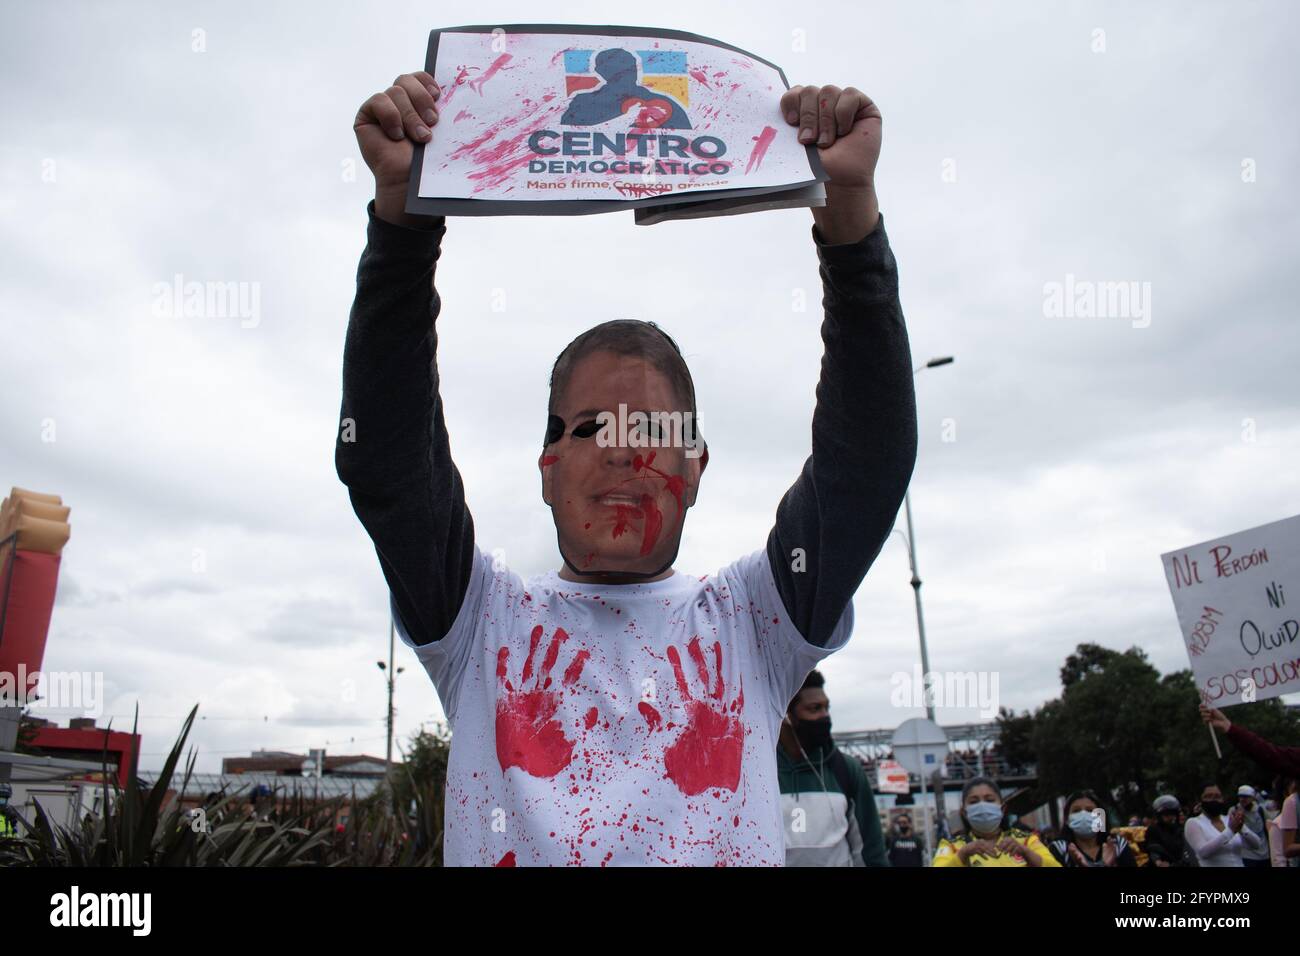 Un manifestante lleva una máscara de la cara del presidente Iván Duque, mientras sostiene una señal que dice: 'Centro demoníaco' en referencia al partido político colombiano Centro Democrático en un nuevo día de protestas en Bogotá en el contexto de la conmemoración de un mes de inicio de la huelga nacional en Colombia contra el Gobierno de Ivan Duque, el 28 de marzo de 2021. Foto de stock